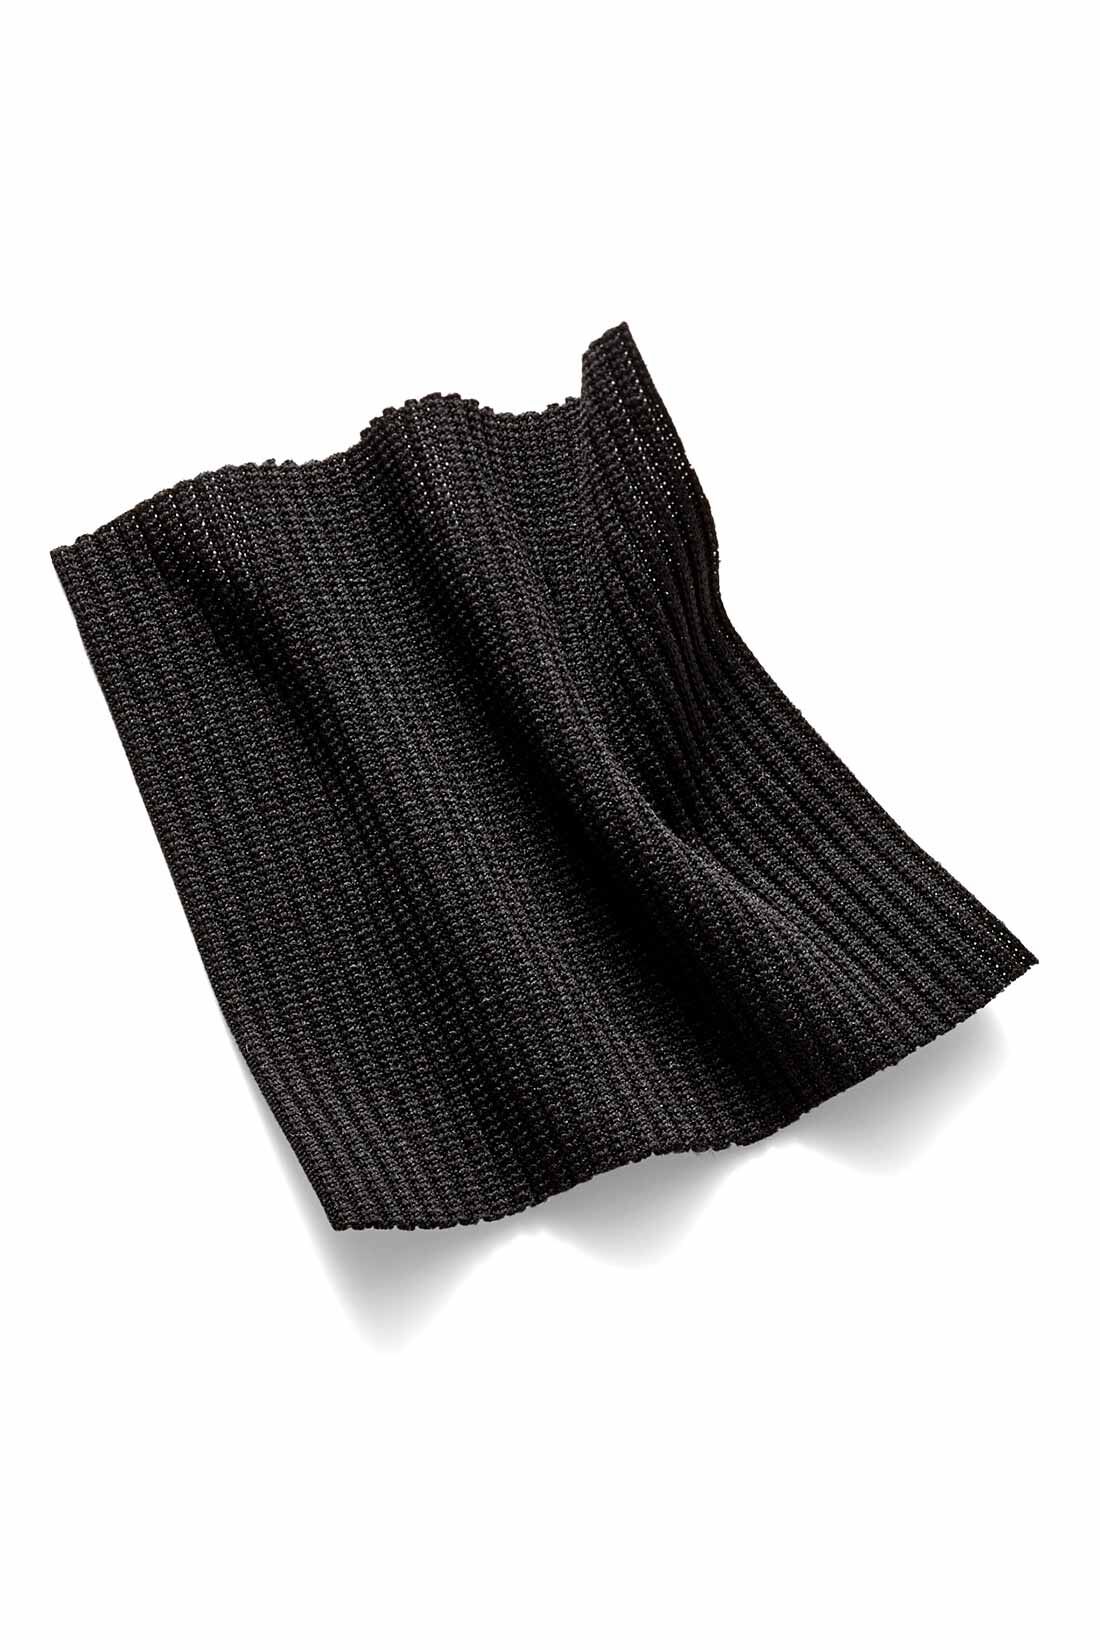 IEDIT|【コーデ買いキャンペーン】IEDIT[イディット]　福田麻琴さんコラボ リブ素材のスイムウェア3点セット〈ブラック〉|肌に張り付きにくく着心地も快適なストレッチのきいた細めリブ素材。洋服のように着られる上品なブラック。